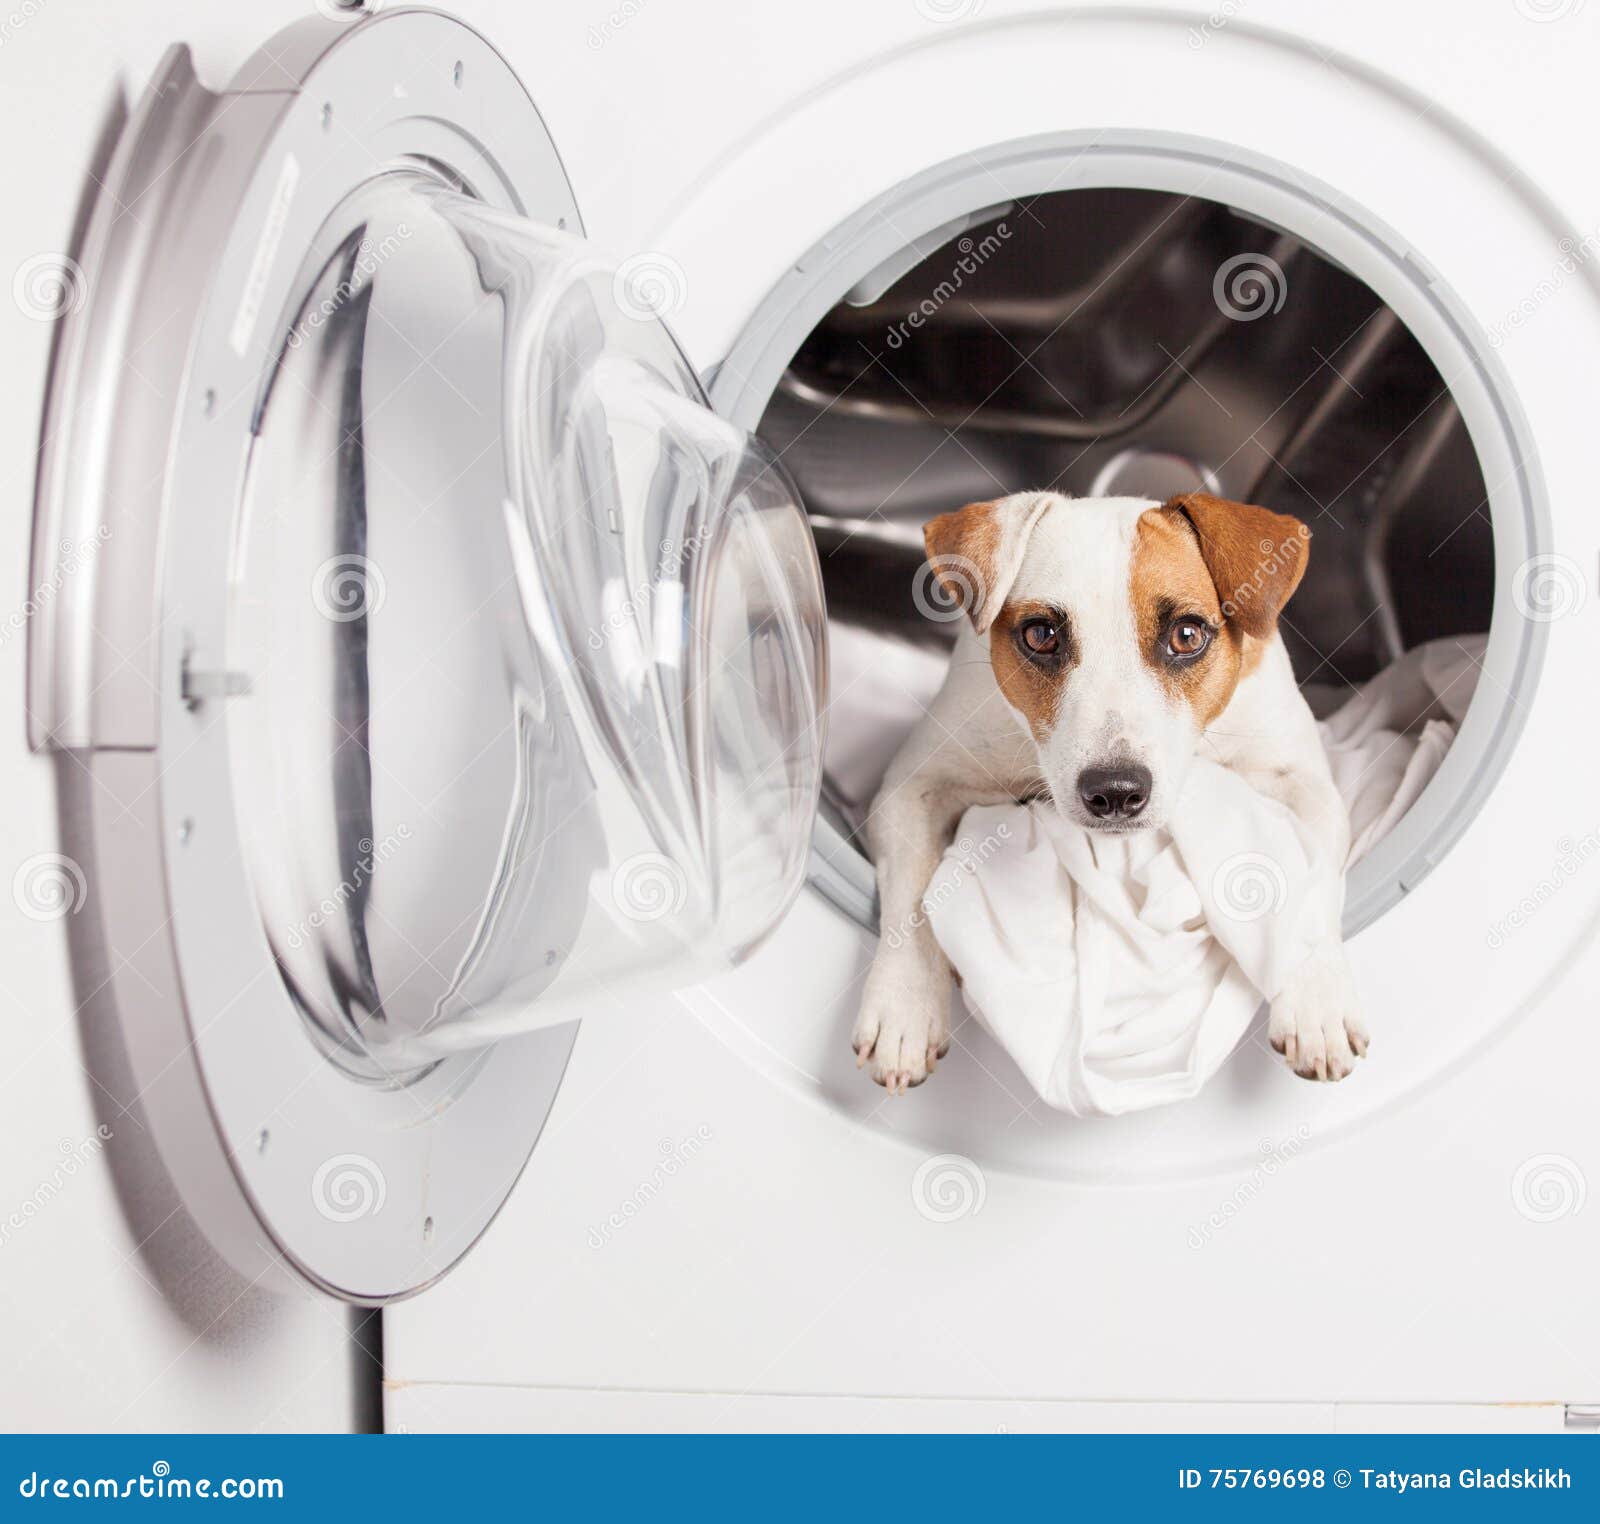 Dog in washer stock photo. Image of machine, washing  75769698